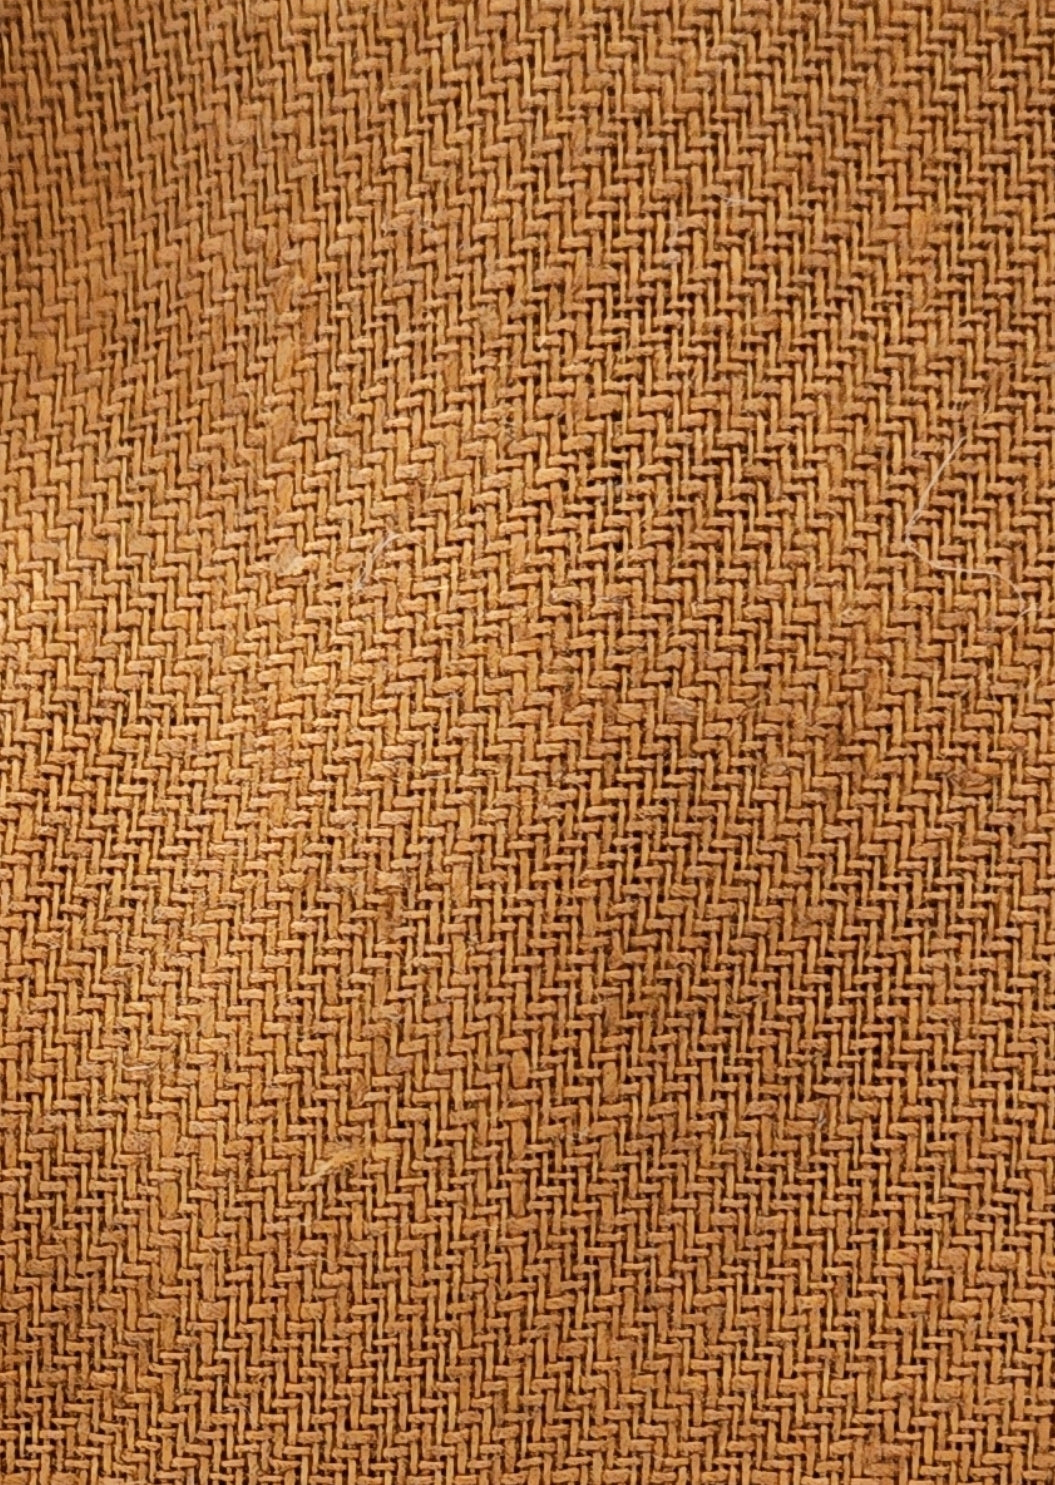 Golden Hour- Linen Twill Fabric - 1 Yard